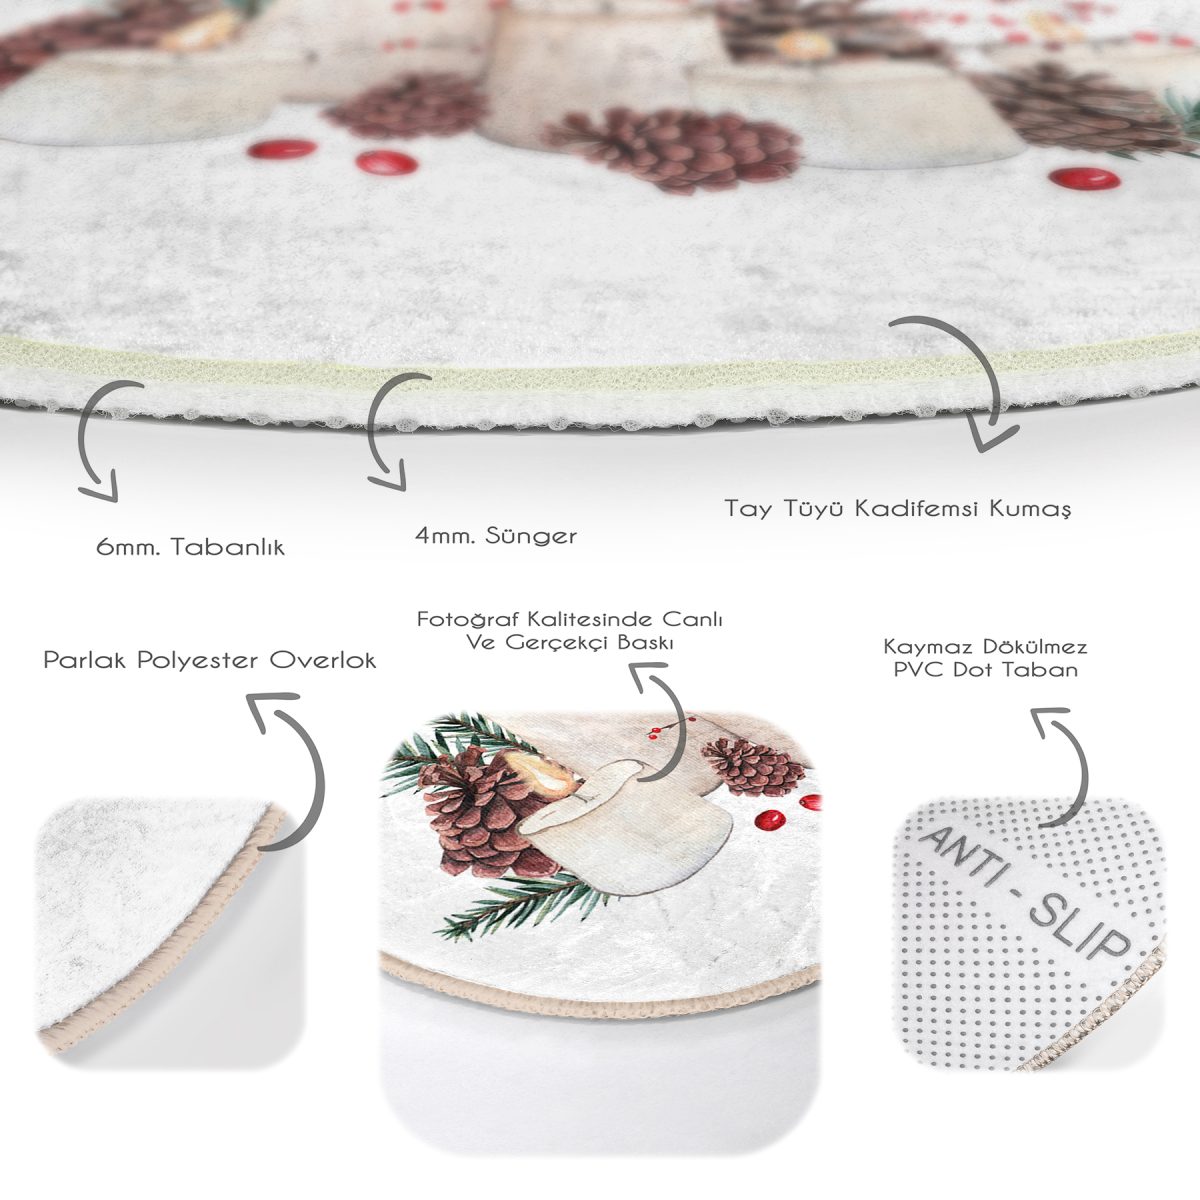 Mum ve Kozalak Tasarımlı Christmas Temalı Dijital Baskılı Renkli Mutfak Yıkanabilir Kaymaz Tabanlı Yuvarlak Halı Realhomes